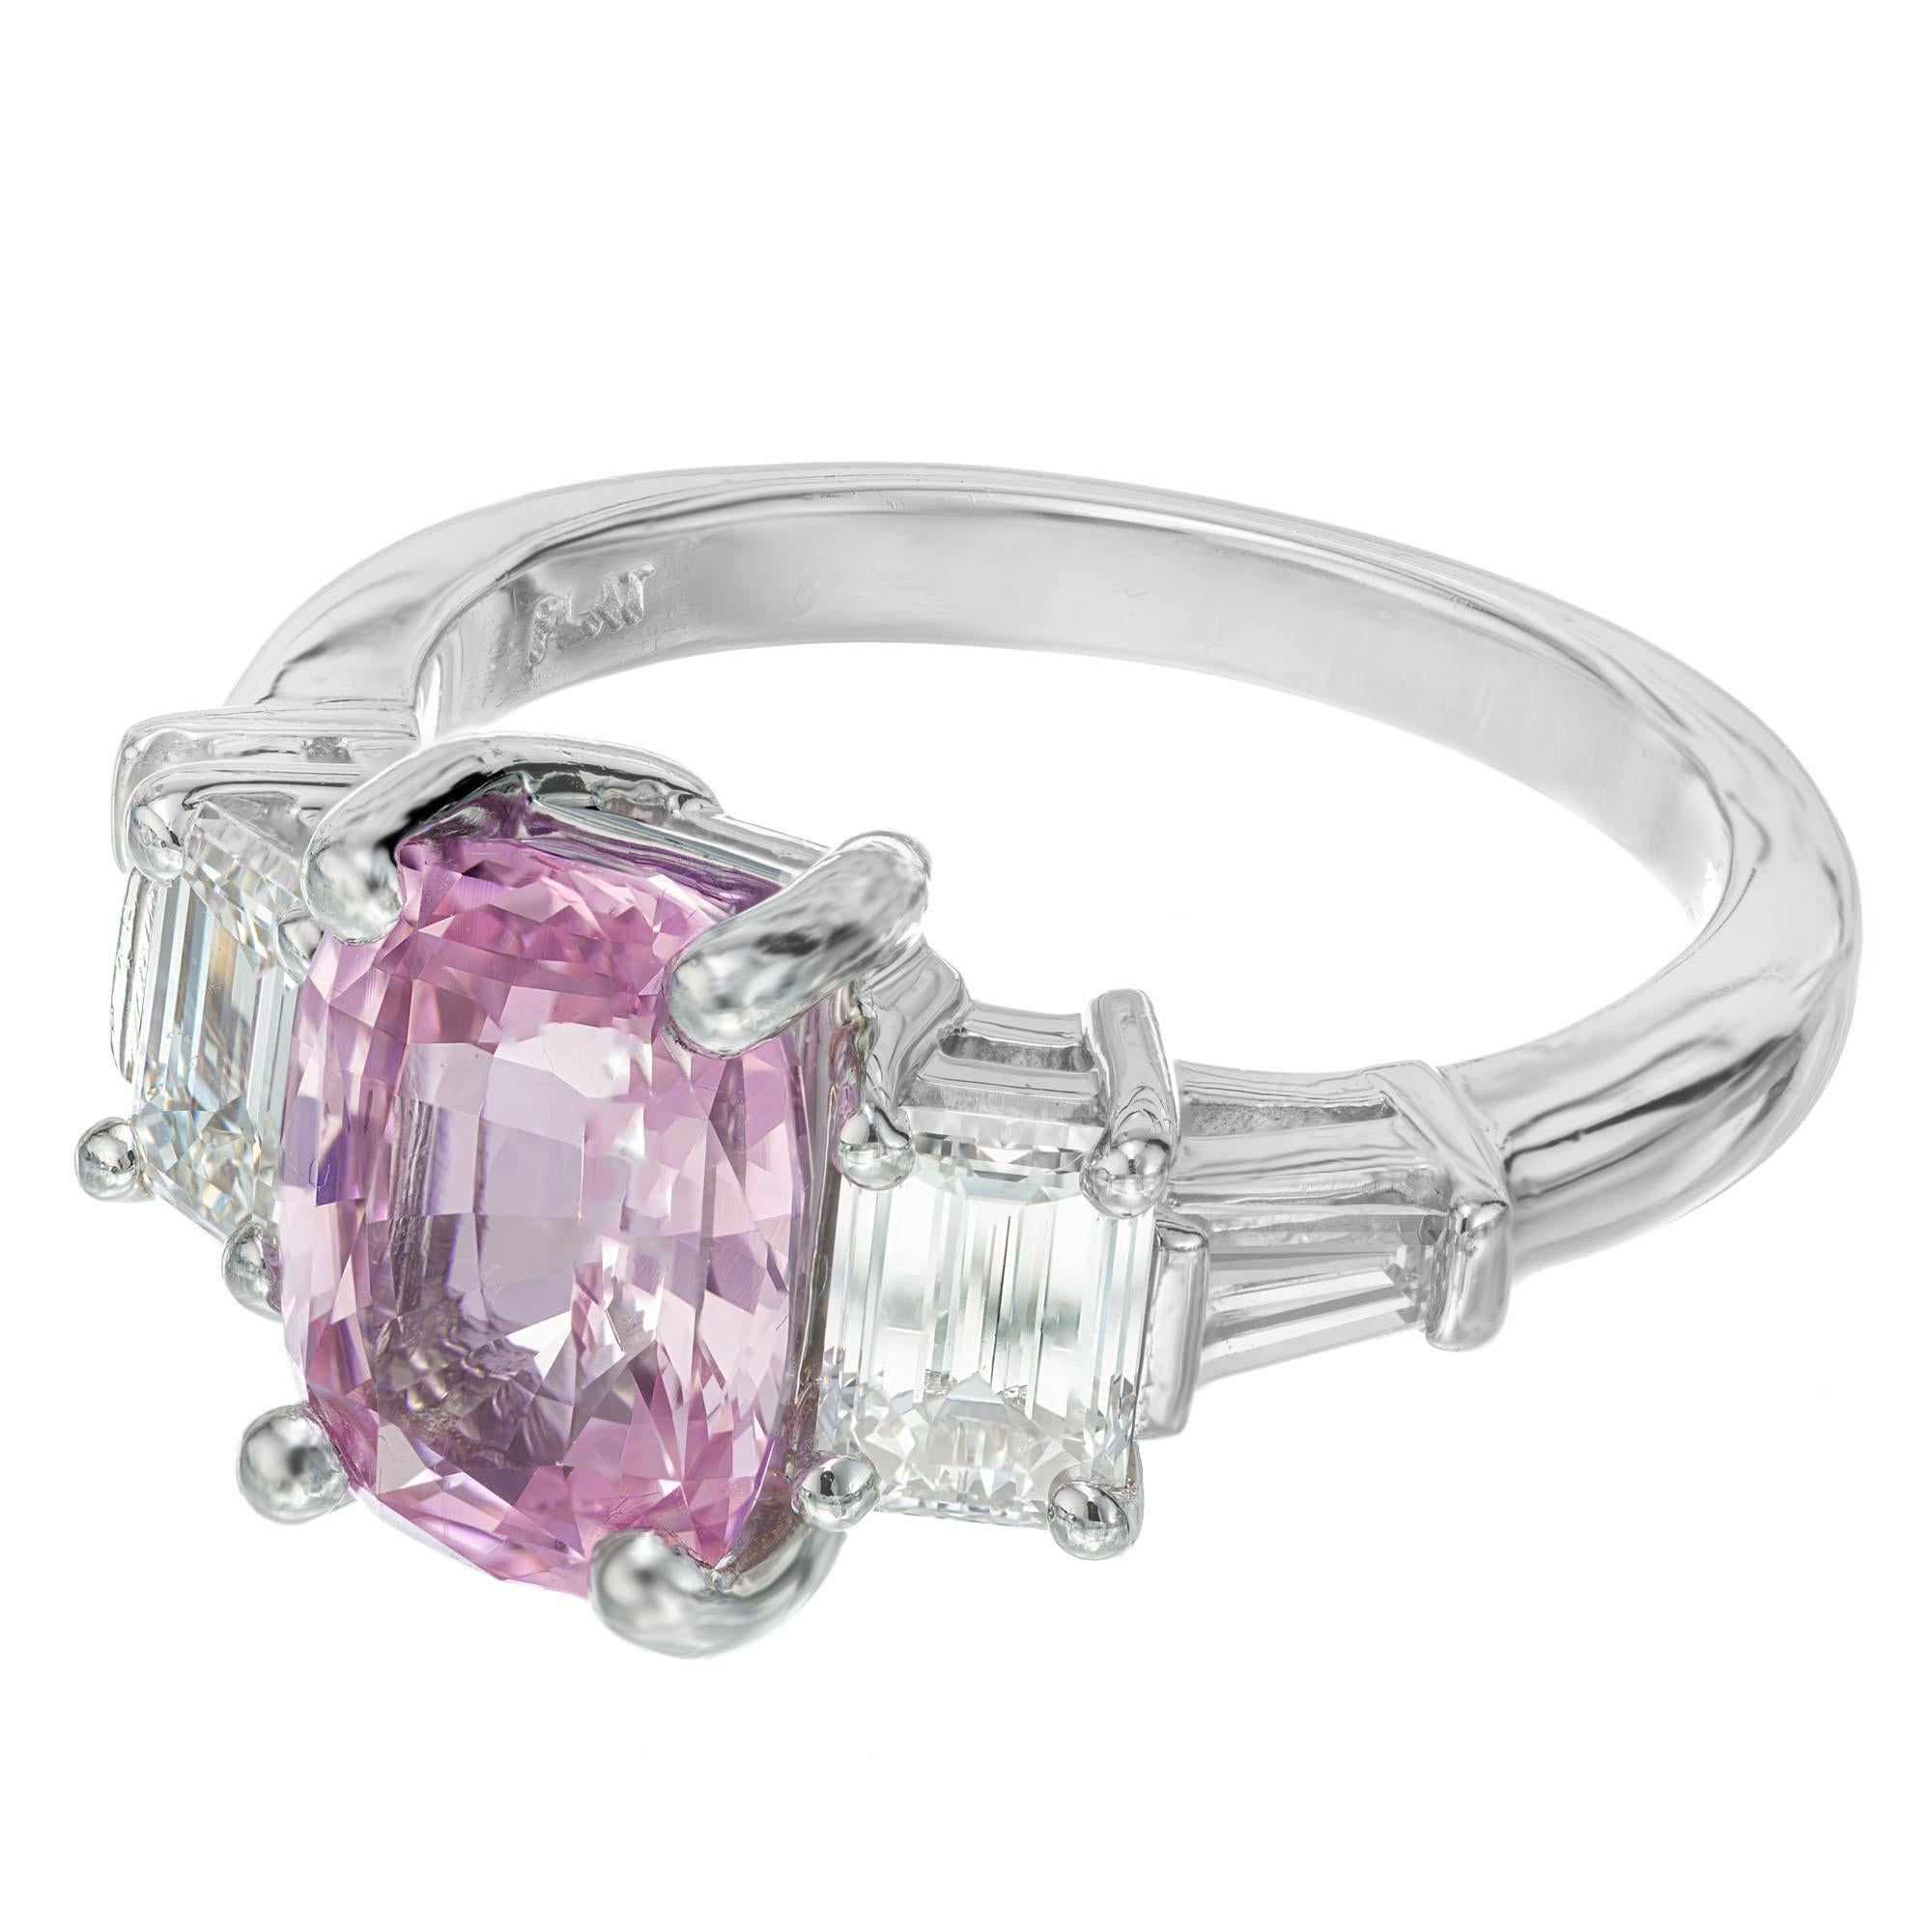 Natürlicher lila rosa Saphir und Diamant Verlobungsring. GIA-zertifizierter natürlicher, unbehandelter Saphir im Kissenschliff in einer Platinfassung mit 2 smaragdgrünen und 2 seitlichen Baguette-Diamanten mit Kappenschliff. Der Ring wurde in der